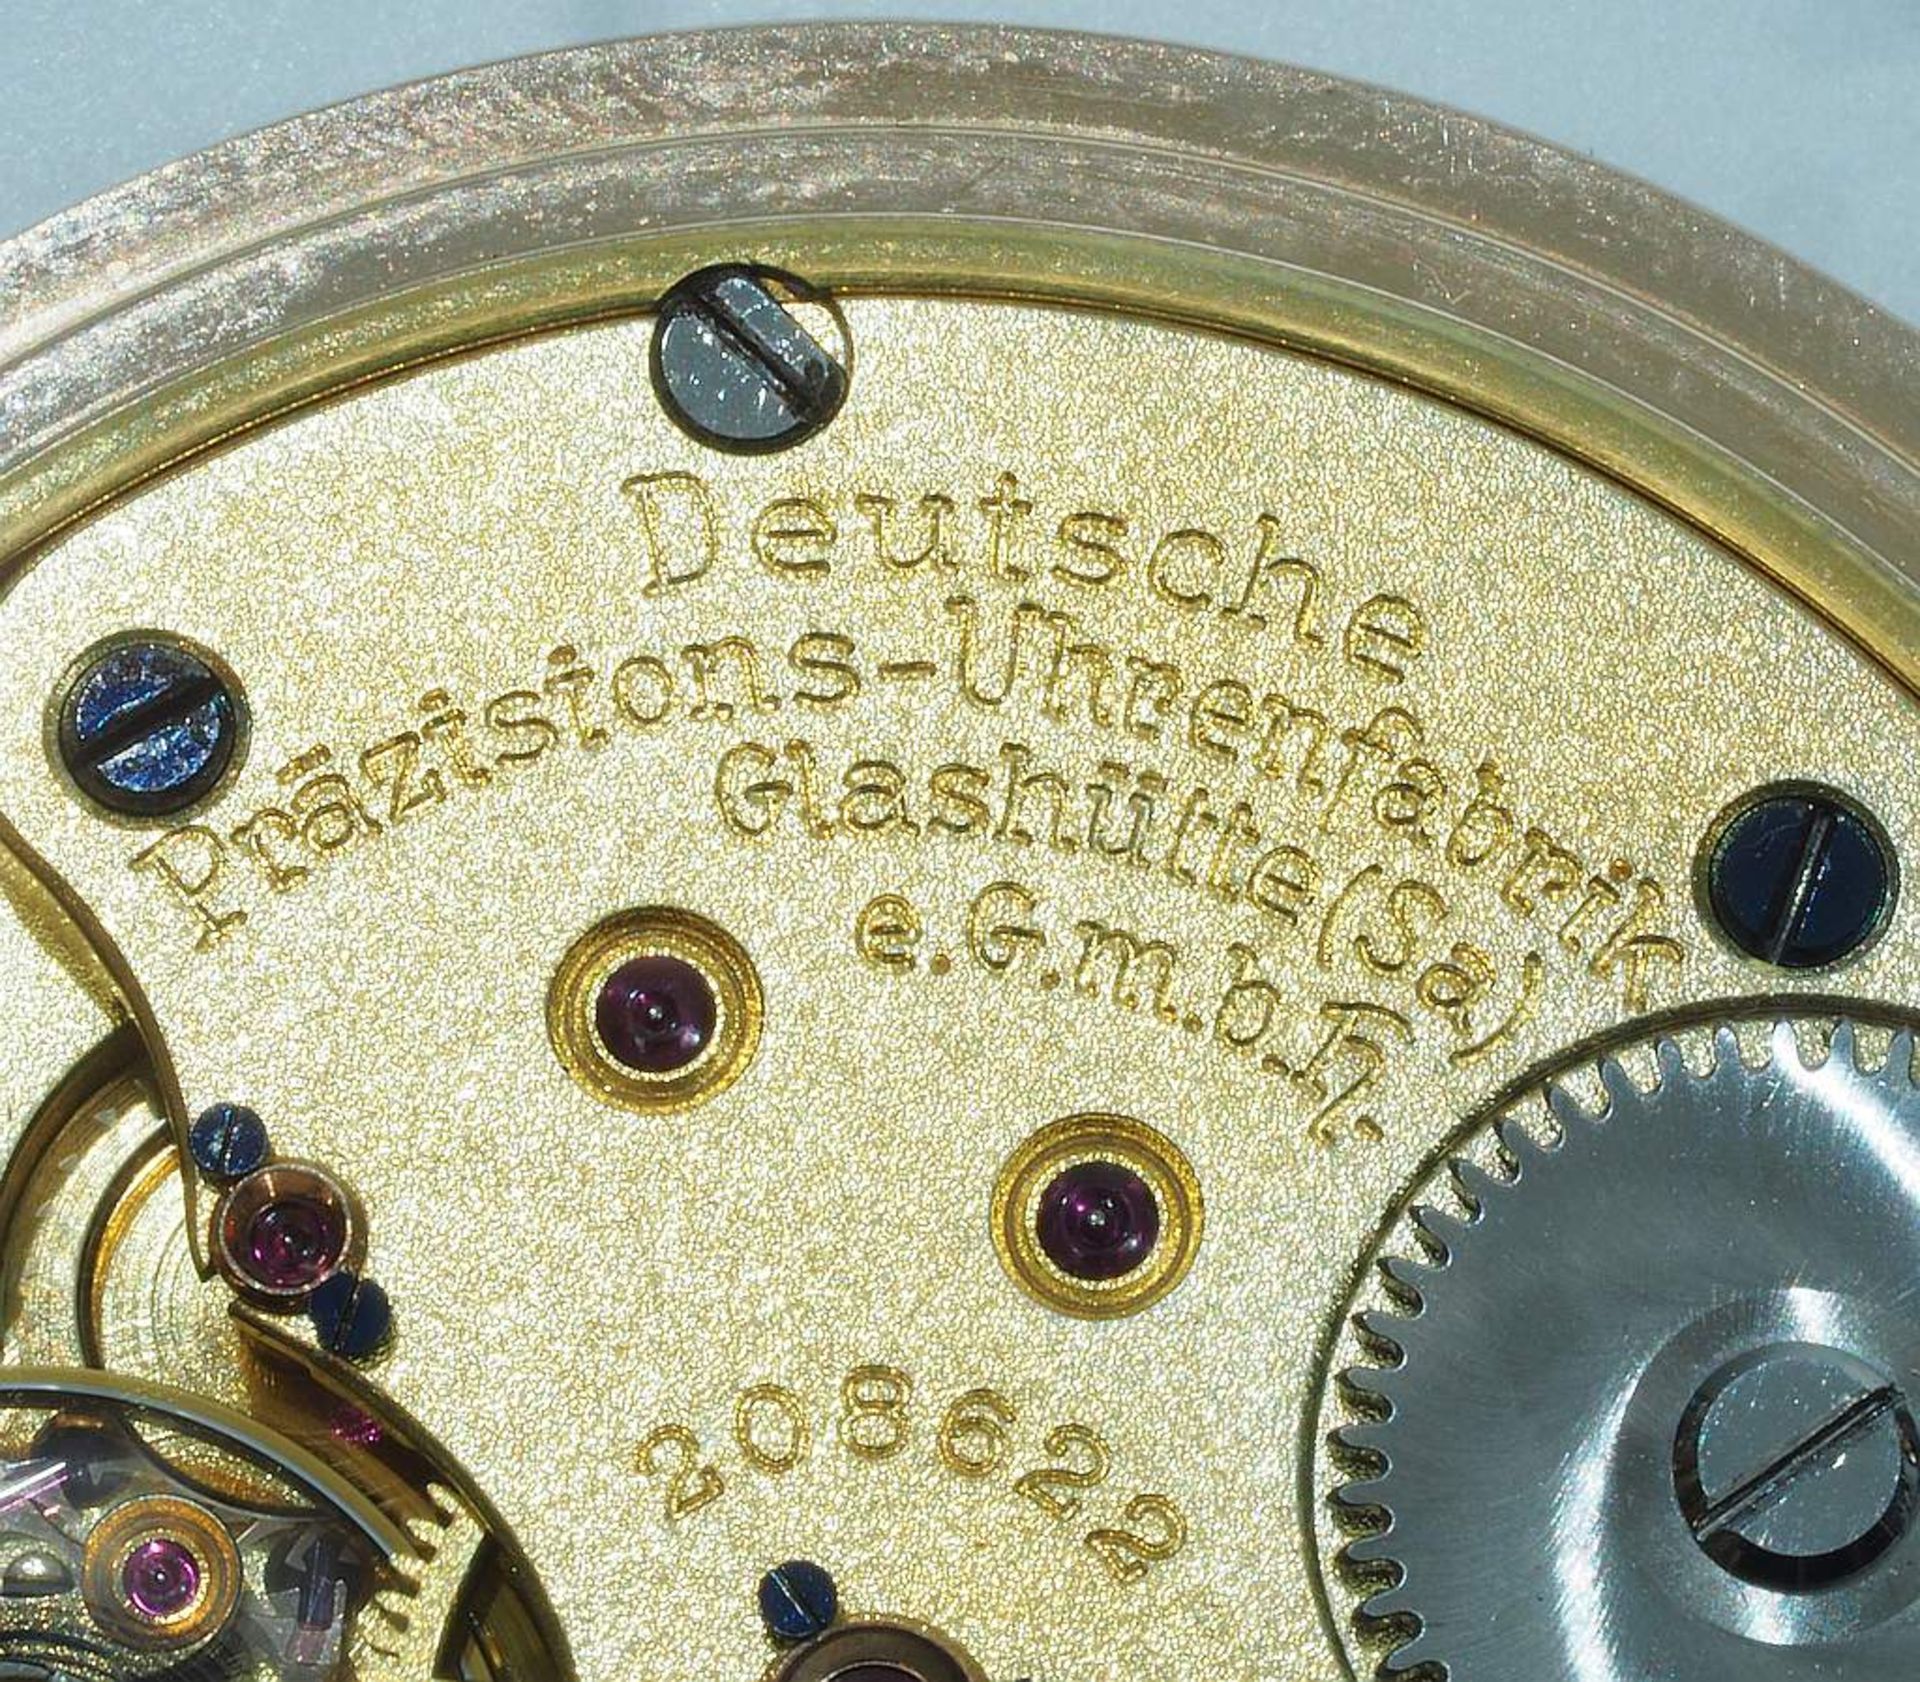 Savonette / Sprungdeckel Taschenuhr. Deutsche Präzisions-Uhrenfabrik Glashütte. Referenznummer - Bild 8 aus 10